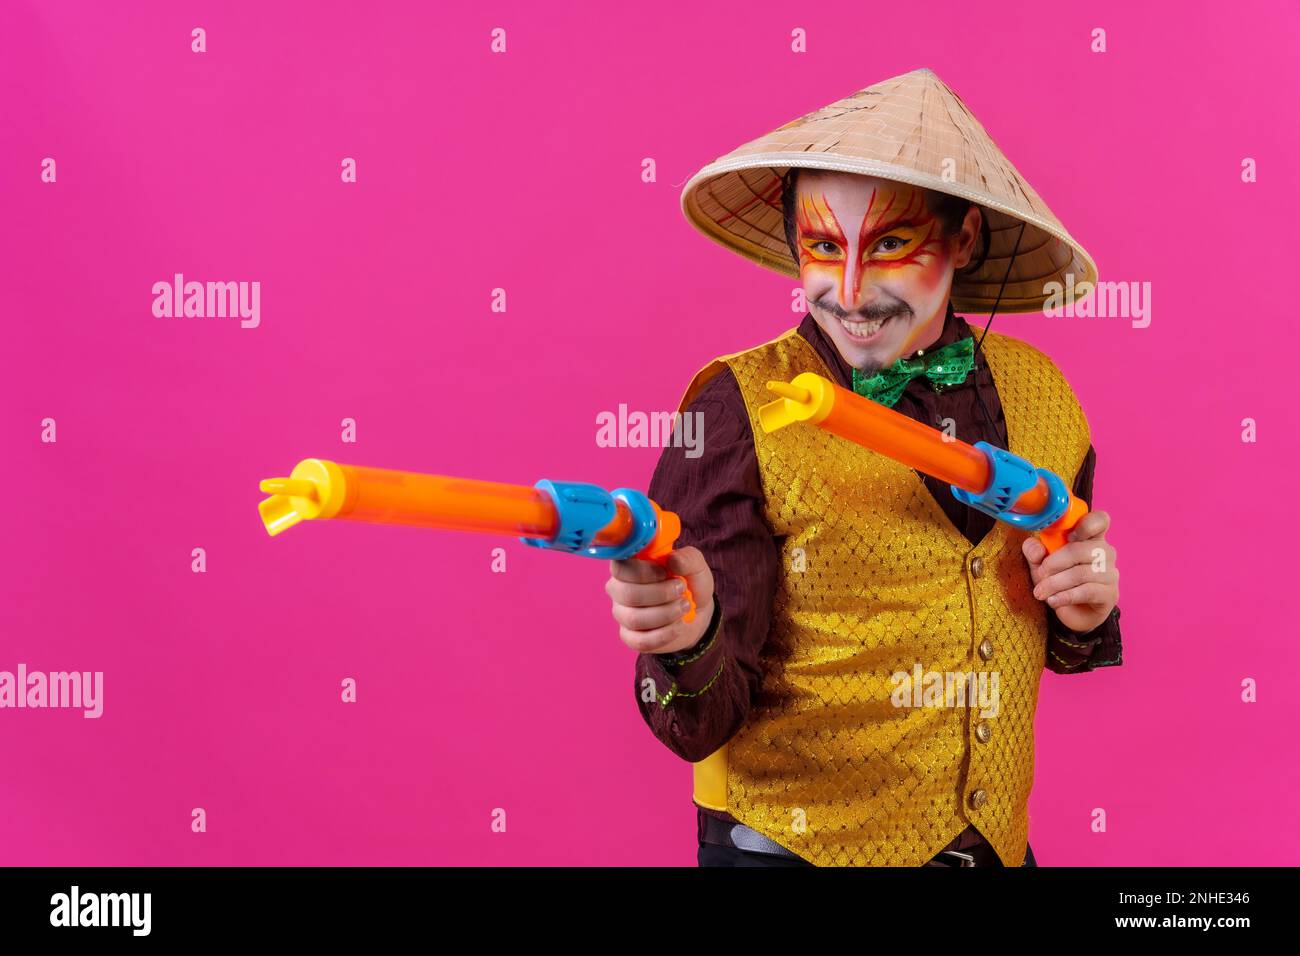 Clown avec maquillage blanc pour le visage sur fond rose, avec des armes à feu et un chapeau chinois Banque D'Images